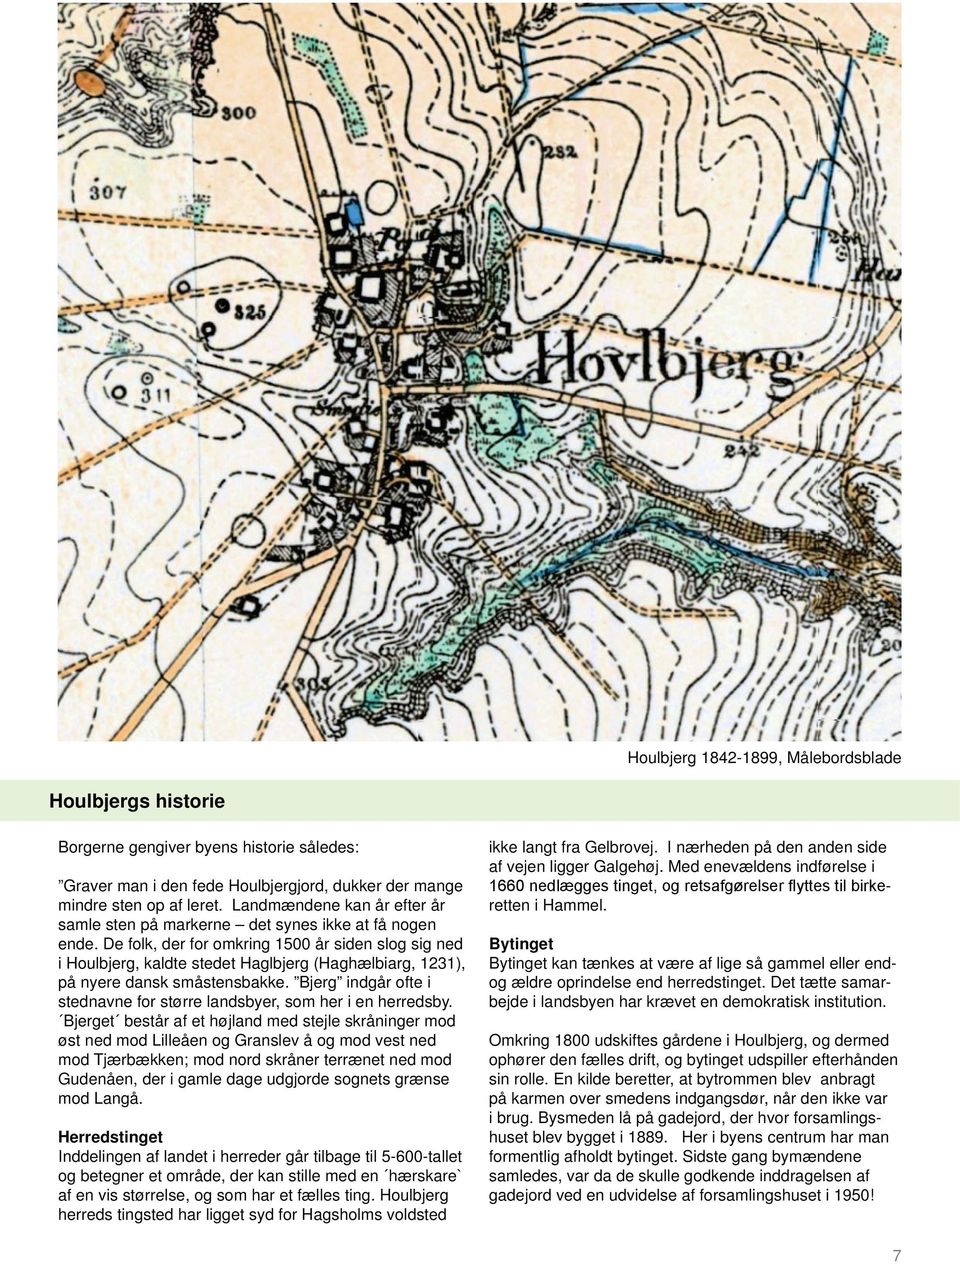 De folk, der for omkring 1500 år siden slog sig ned i Houlbjerg, kaldte stedet Haglbjerg (Haghælbiarg, 1231), på nyere dansk småstensbakke.